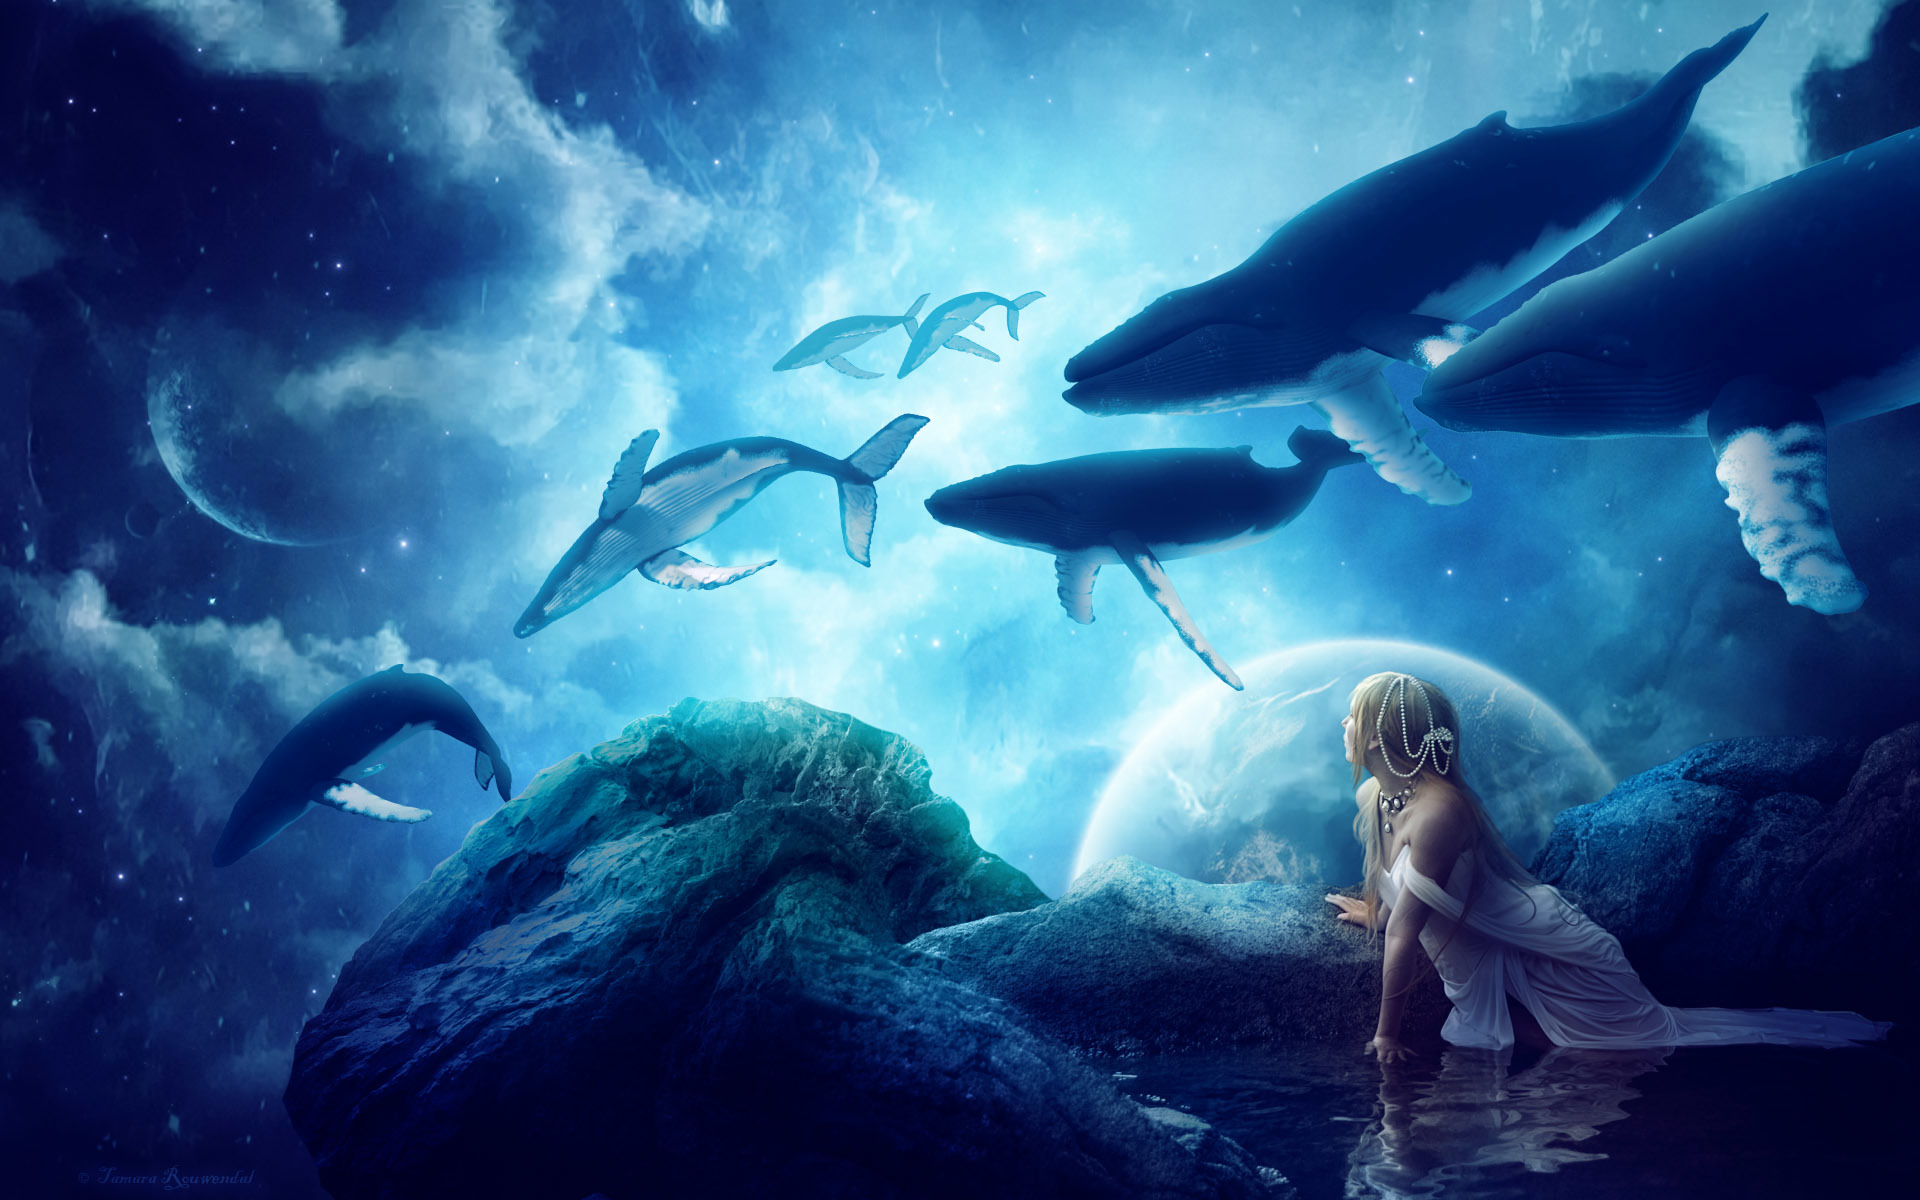 Dream blue - whales - creation